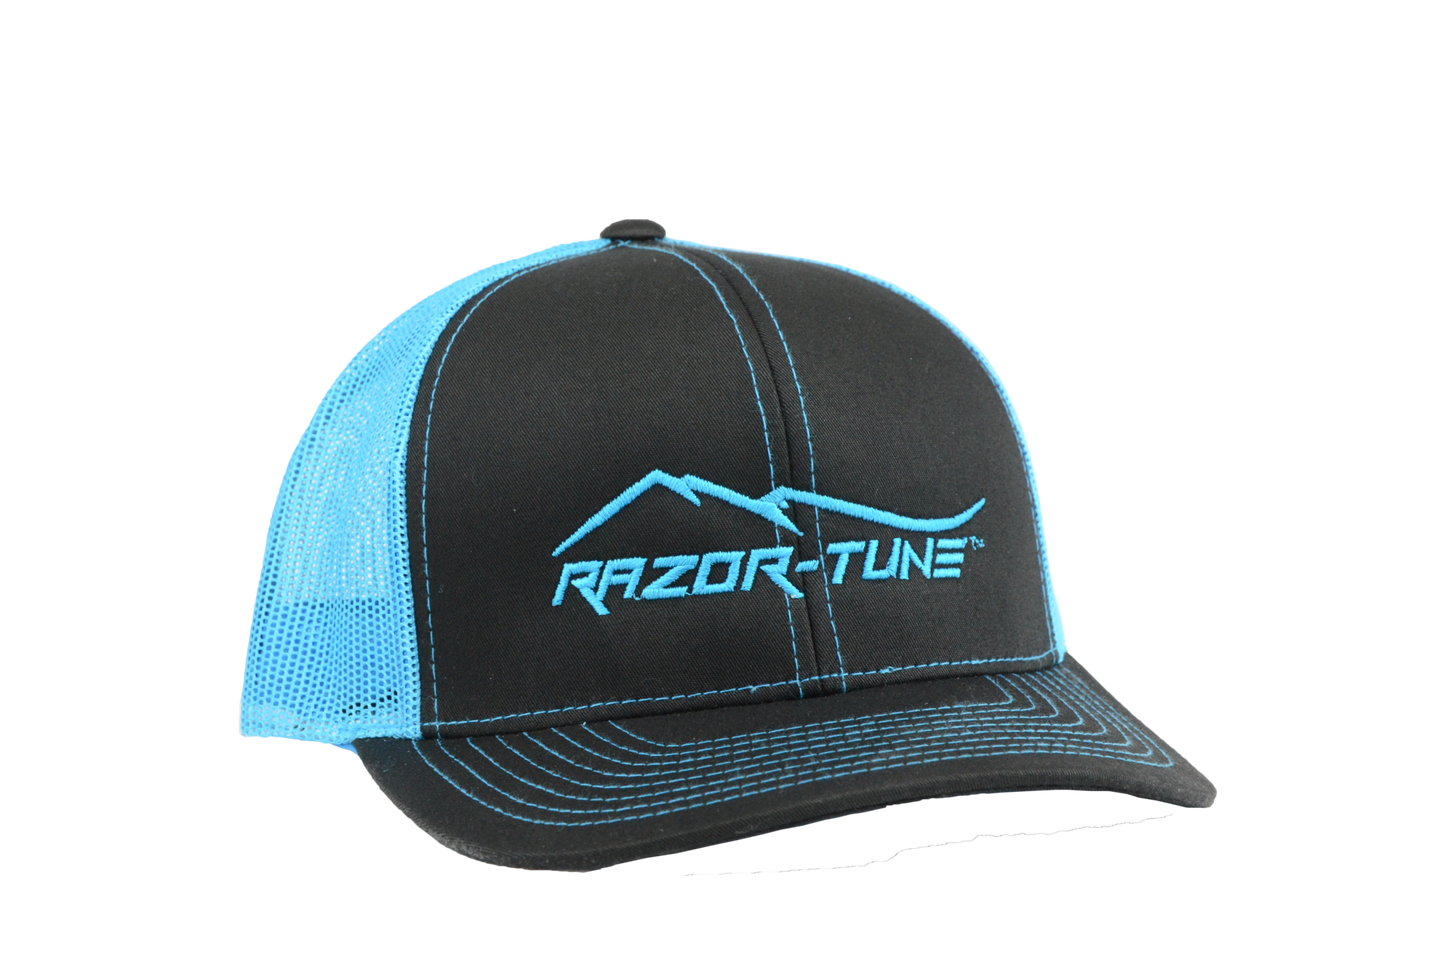 Razor-Tune Podium Hat